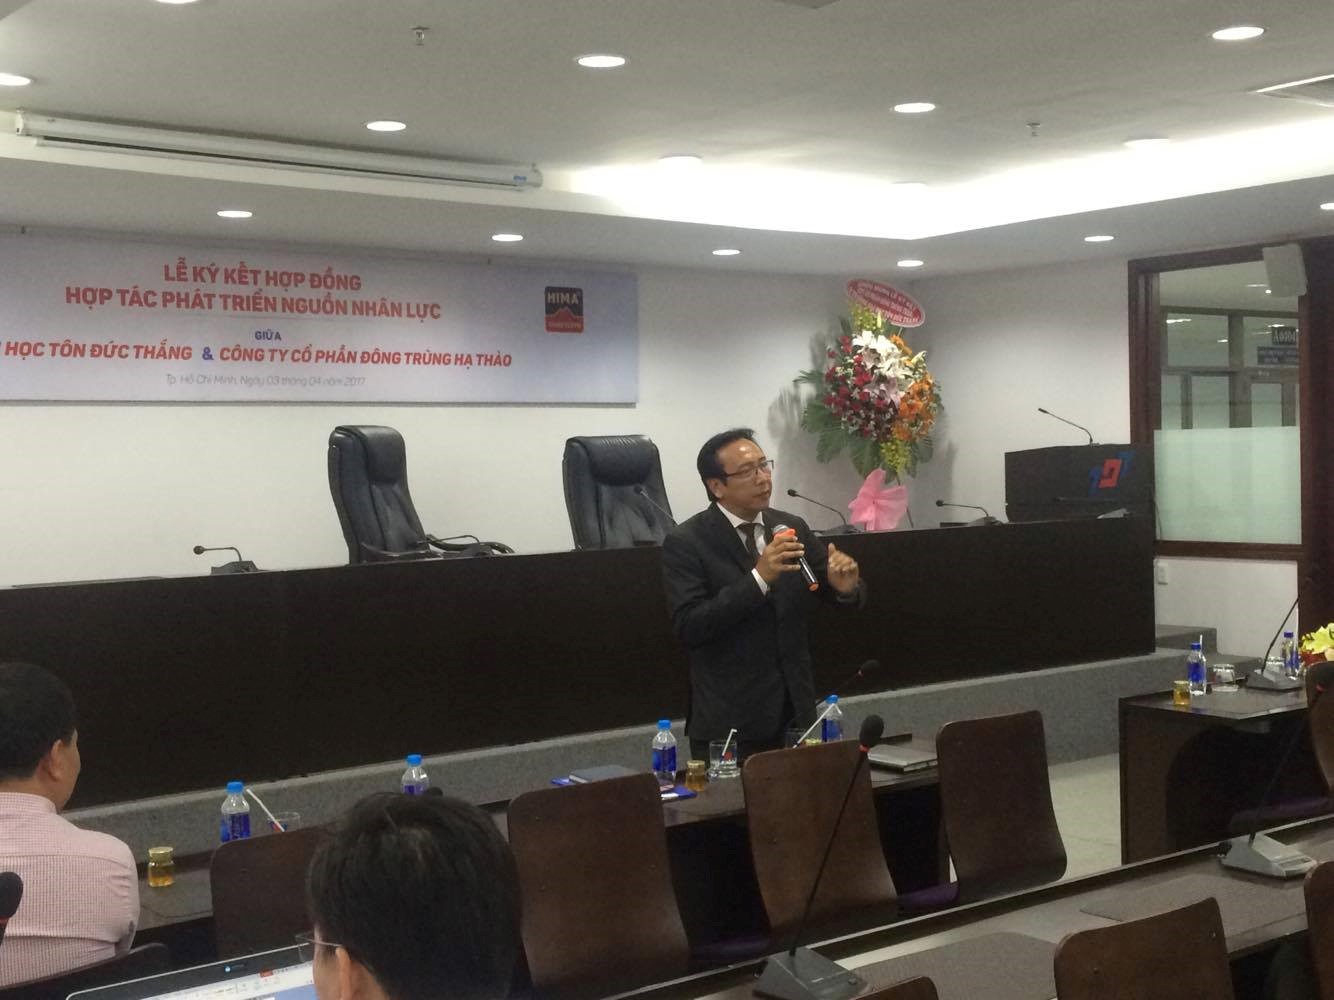 Ông Lê Tấn Trung – Giám đốc Đào tạo công ty cổ phần HIMA đang giới thiệu chương trình đào tạo thực hành chuyên môn Kĩ năng Bán hàng giữa công ty và trường Đại học Tôn Đức Thắng